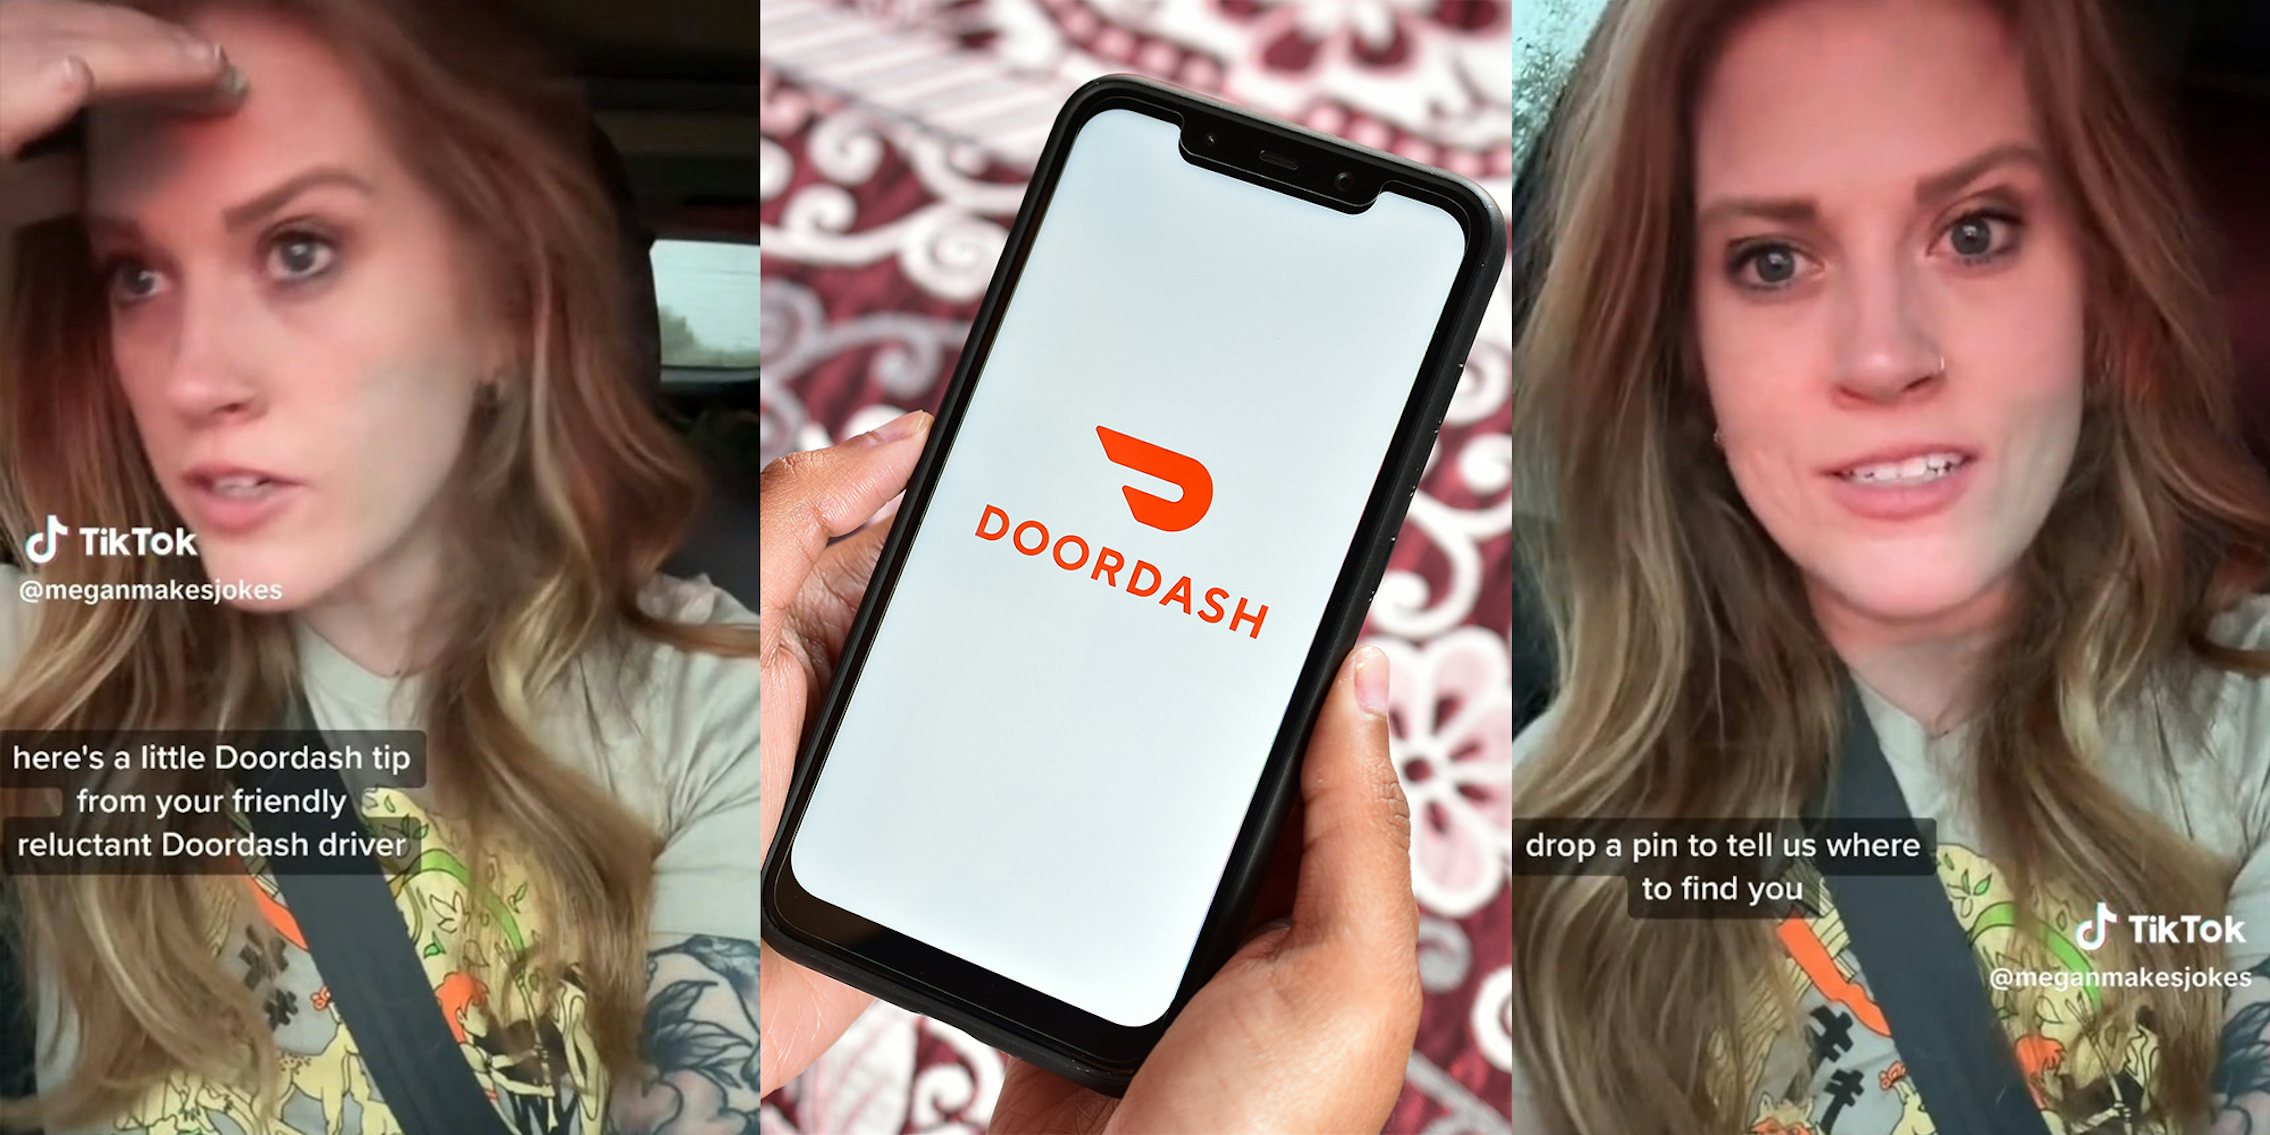 Door Dash Driver shares PSA to DROP A PIN